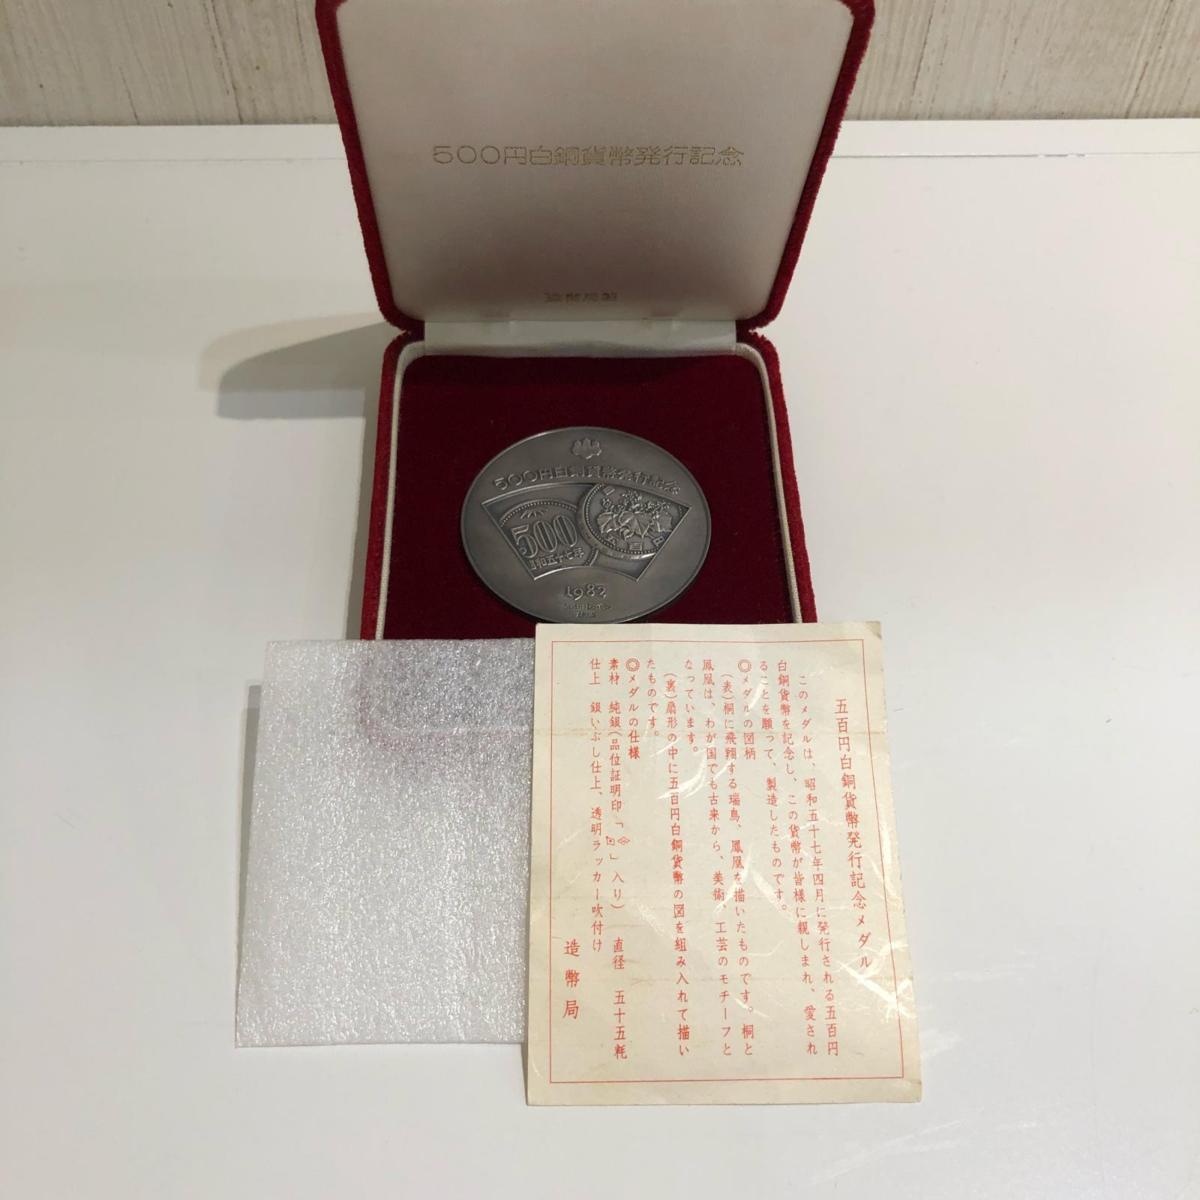 500円白銅貨幣発行記念メダル 造幣局製造 総重量約127.0ｇ 貨幣